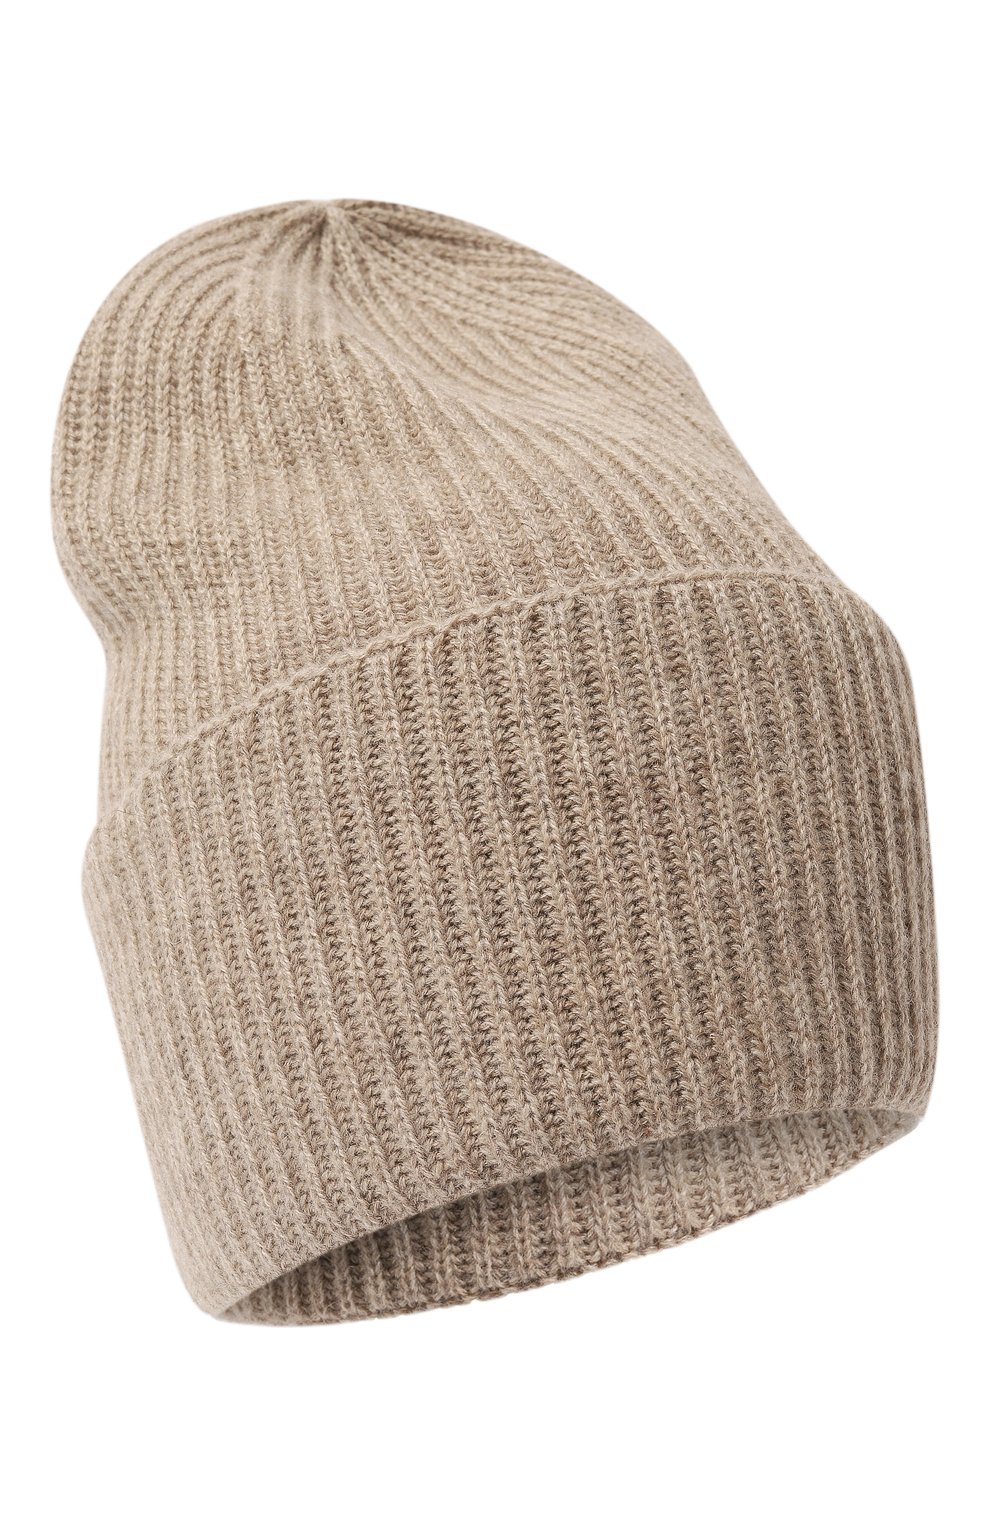 Женская кашемировая шапка FTC бежевого цвета, арт. 800-0950 | Фото 1 (Материал: Текстиль, Кашемир, Шерсть)